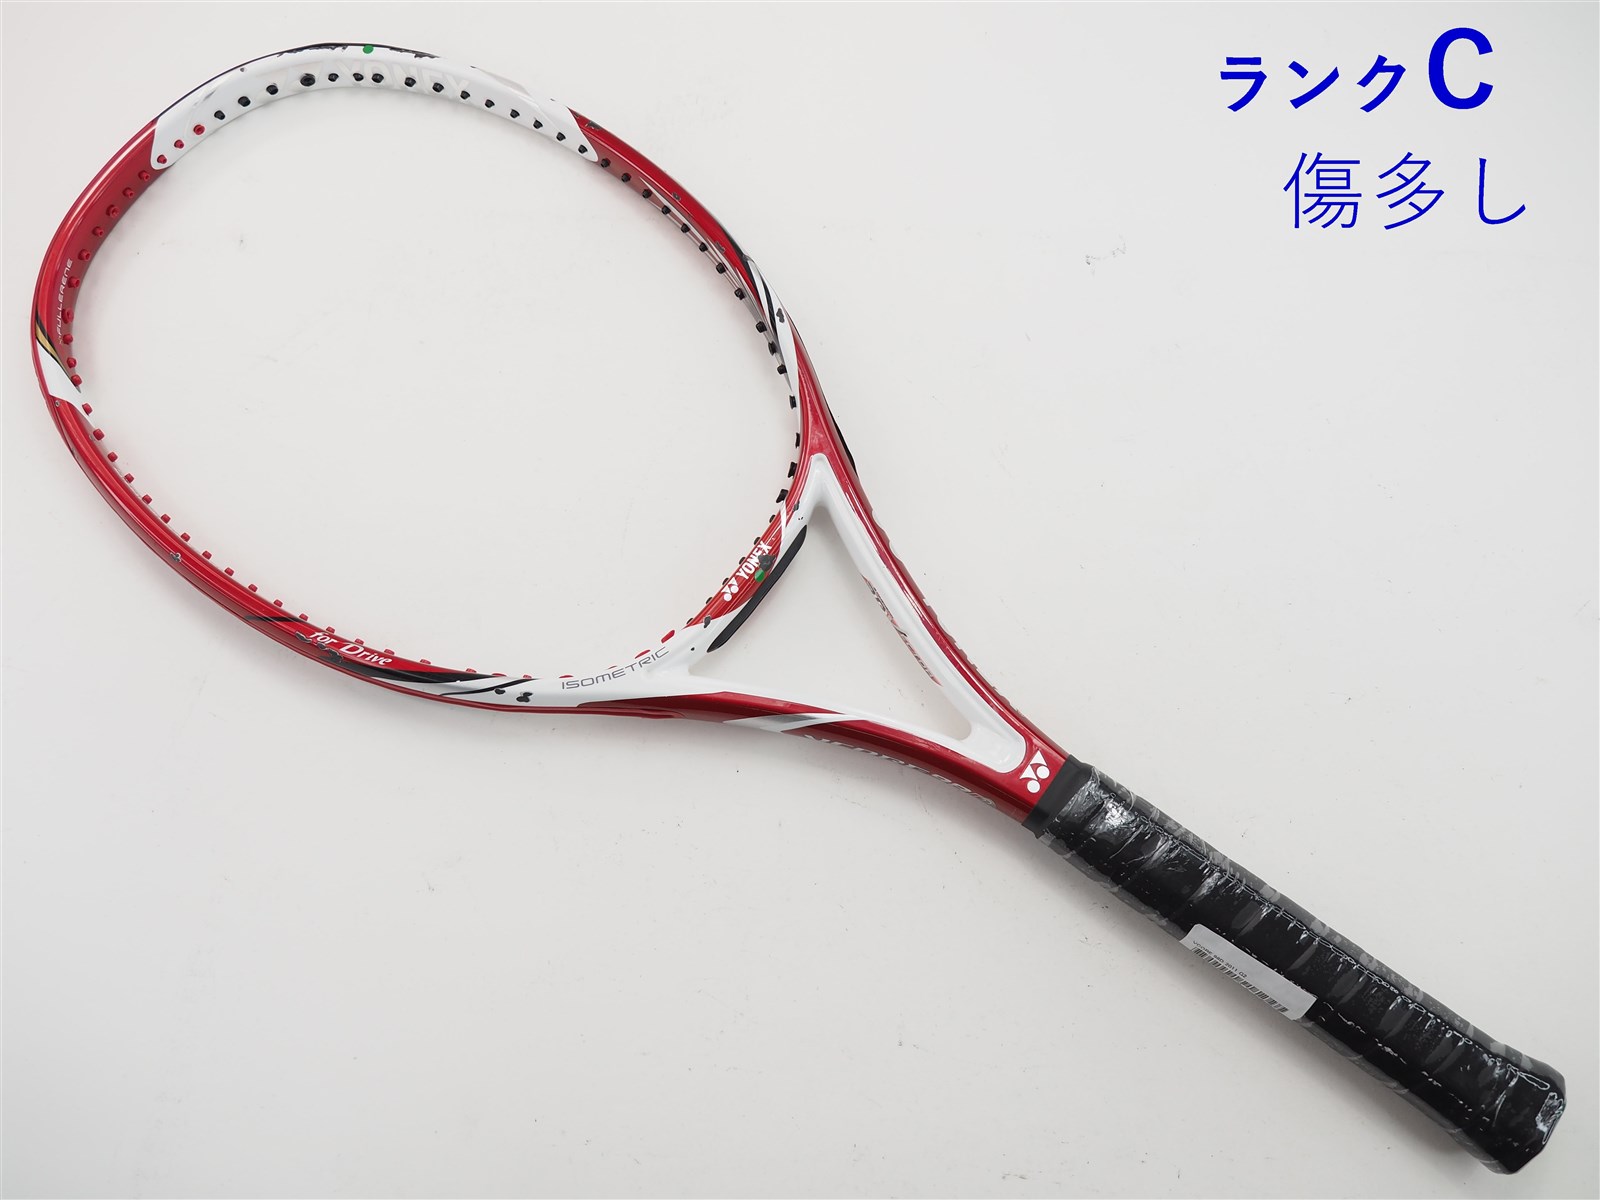 YONEX ヨネックス VCORE ブイコア 95 D 硬式テニスラケット G2-